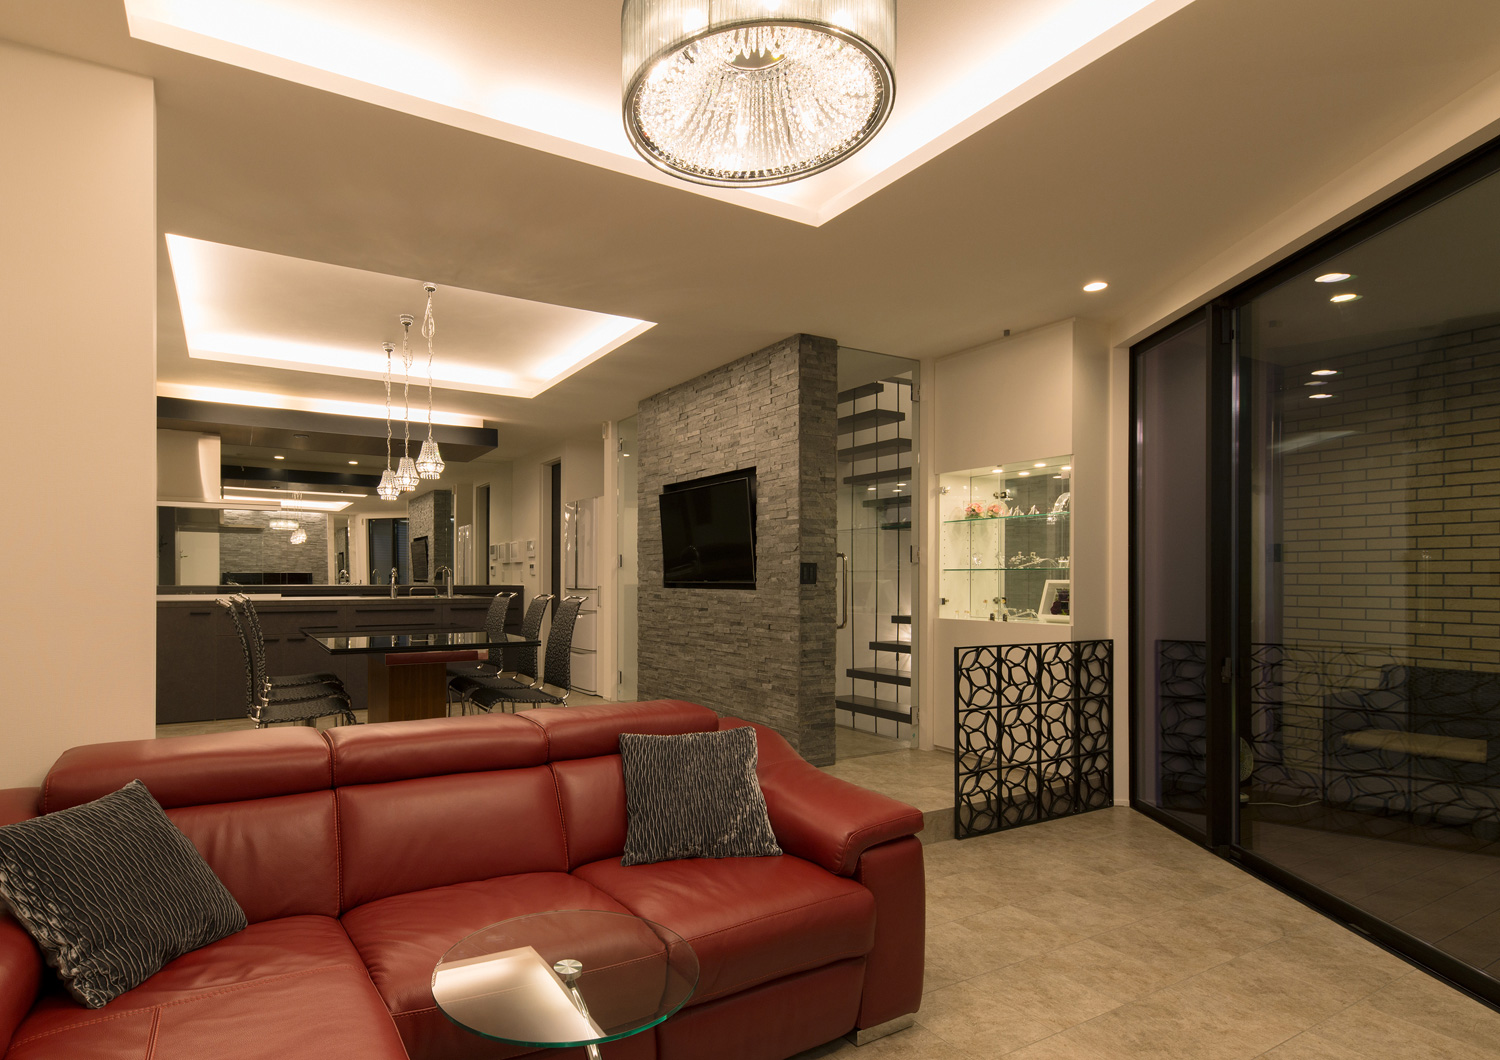 折り上げ天井の間接照明とペンダントライトに照らされる赤いソファーのあるLDK・デザイン住宅